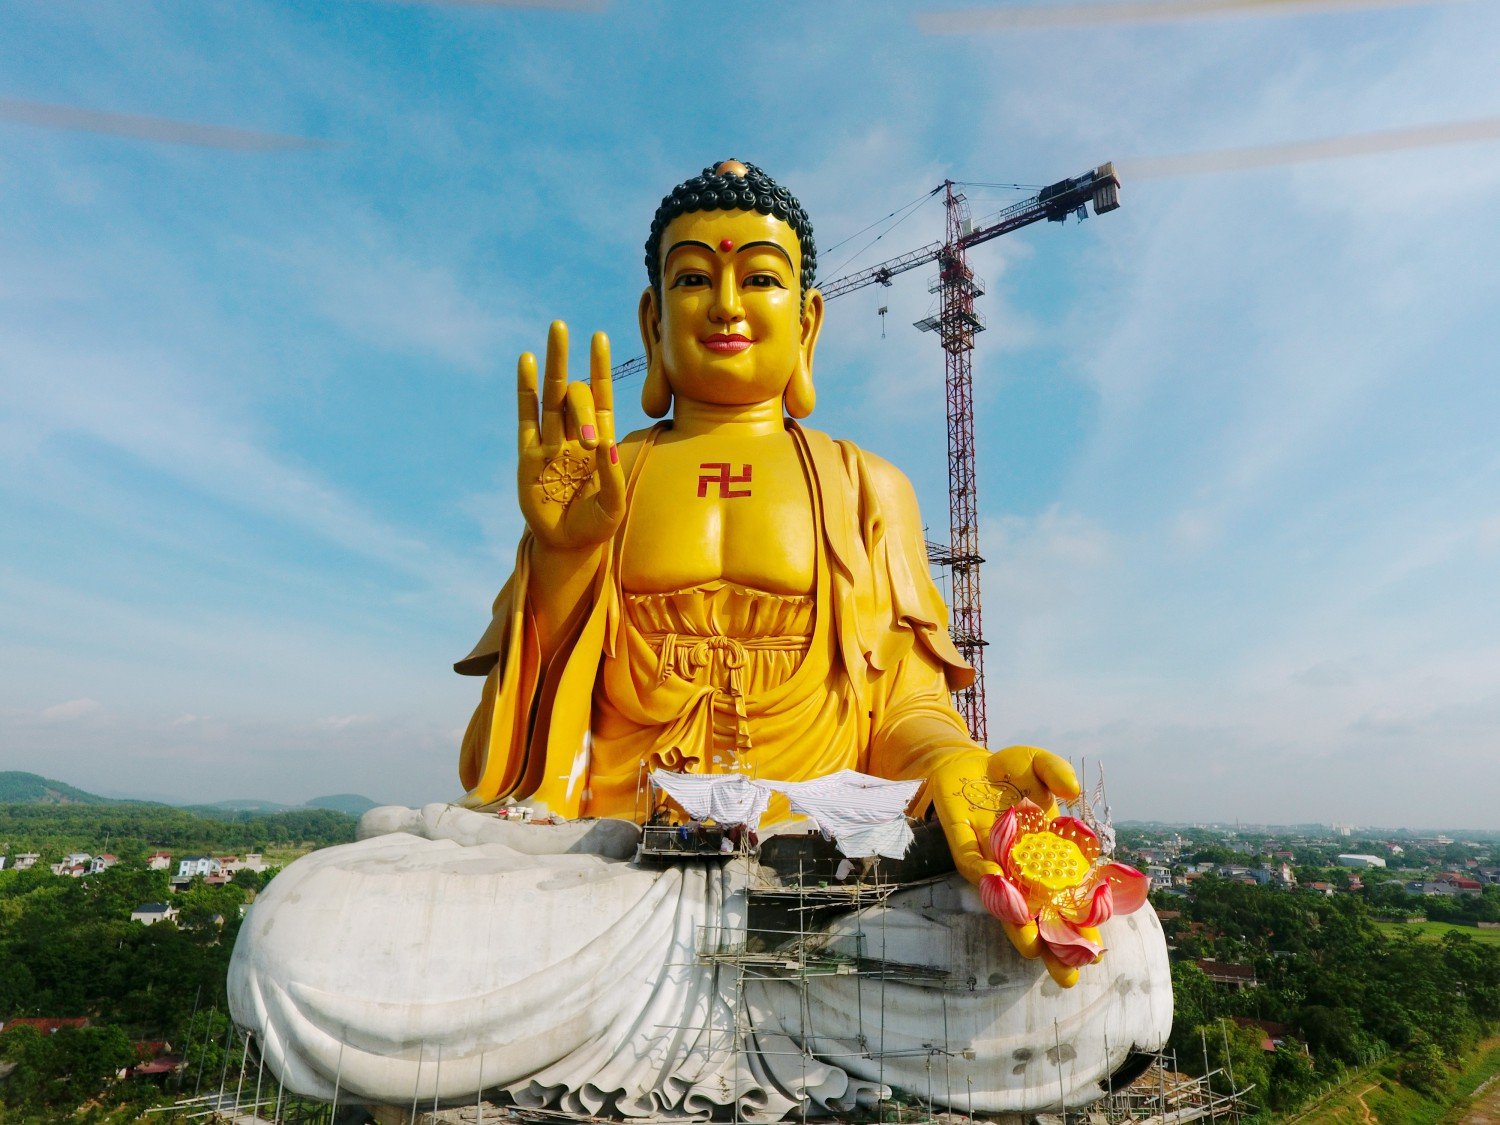 Từ xa nhân dân và Phật tử thập phương có thể nhìn thấy đài sen vàng rực rỡ với cánh hoa mày đỏ sen được trưng nổi bật trên bàn tay tiếp dẫn.